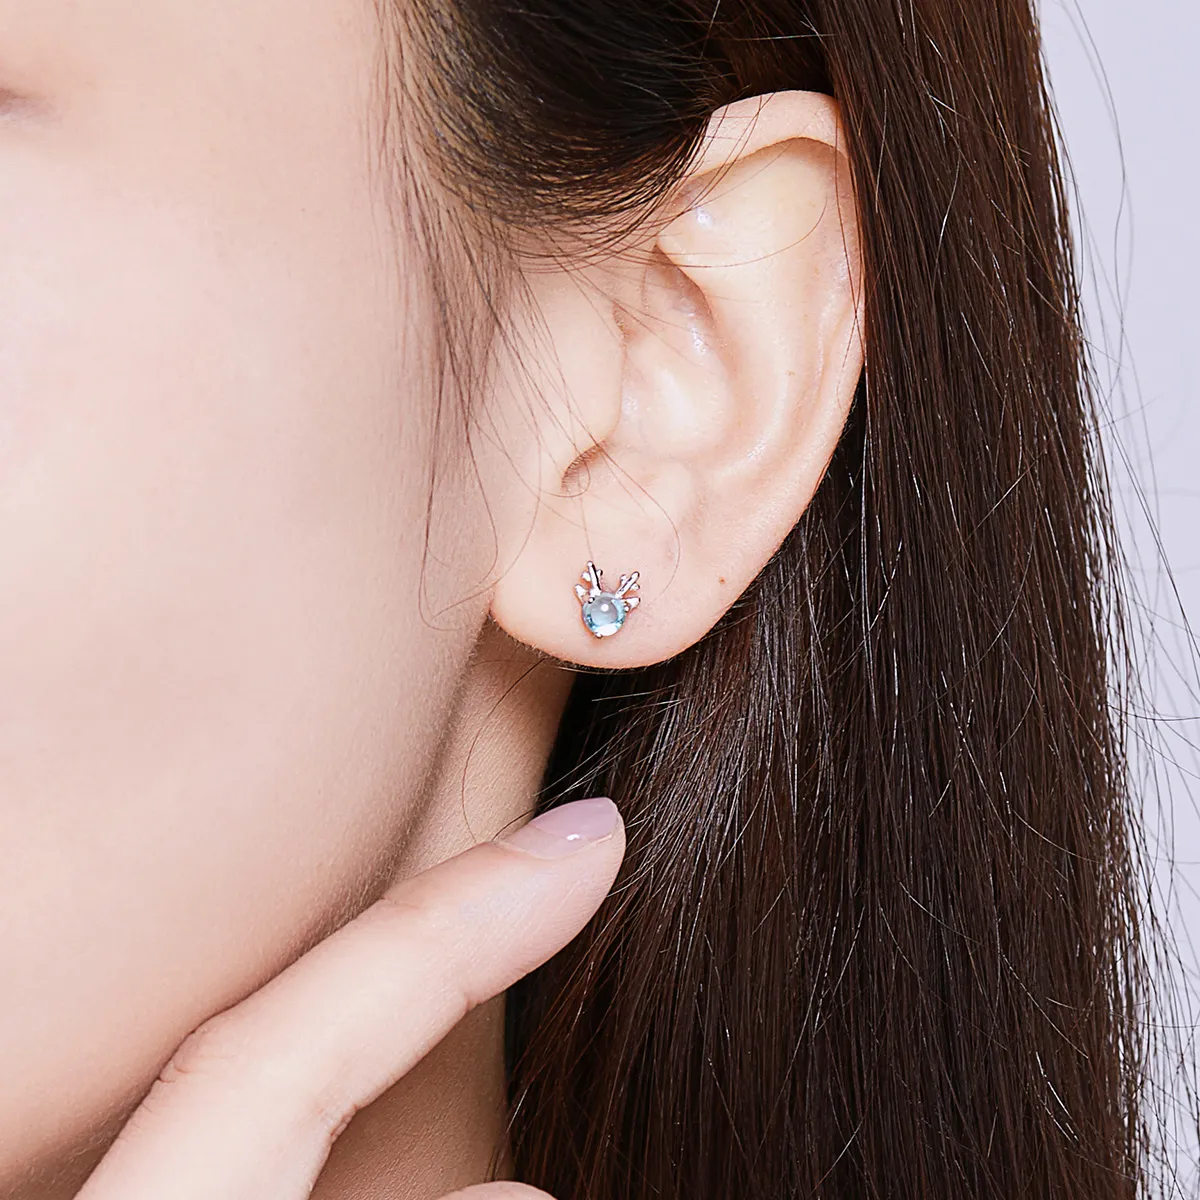 Studuri pentru urechi în stil Pandora, cu cercuri de argint în formă de coarne de cerb - BSE210